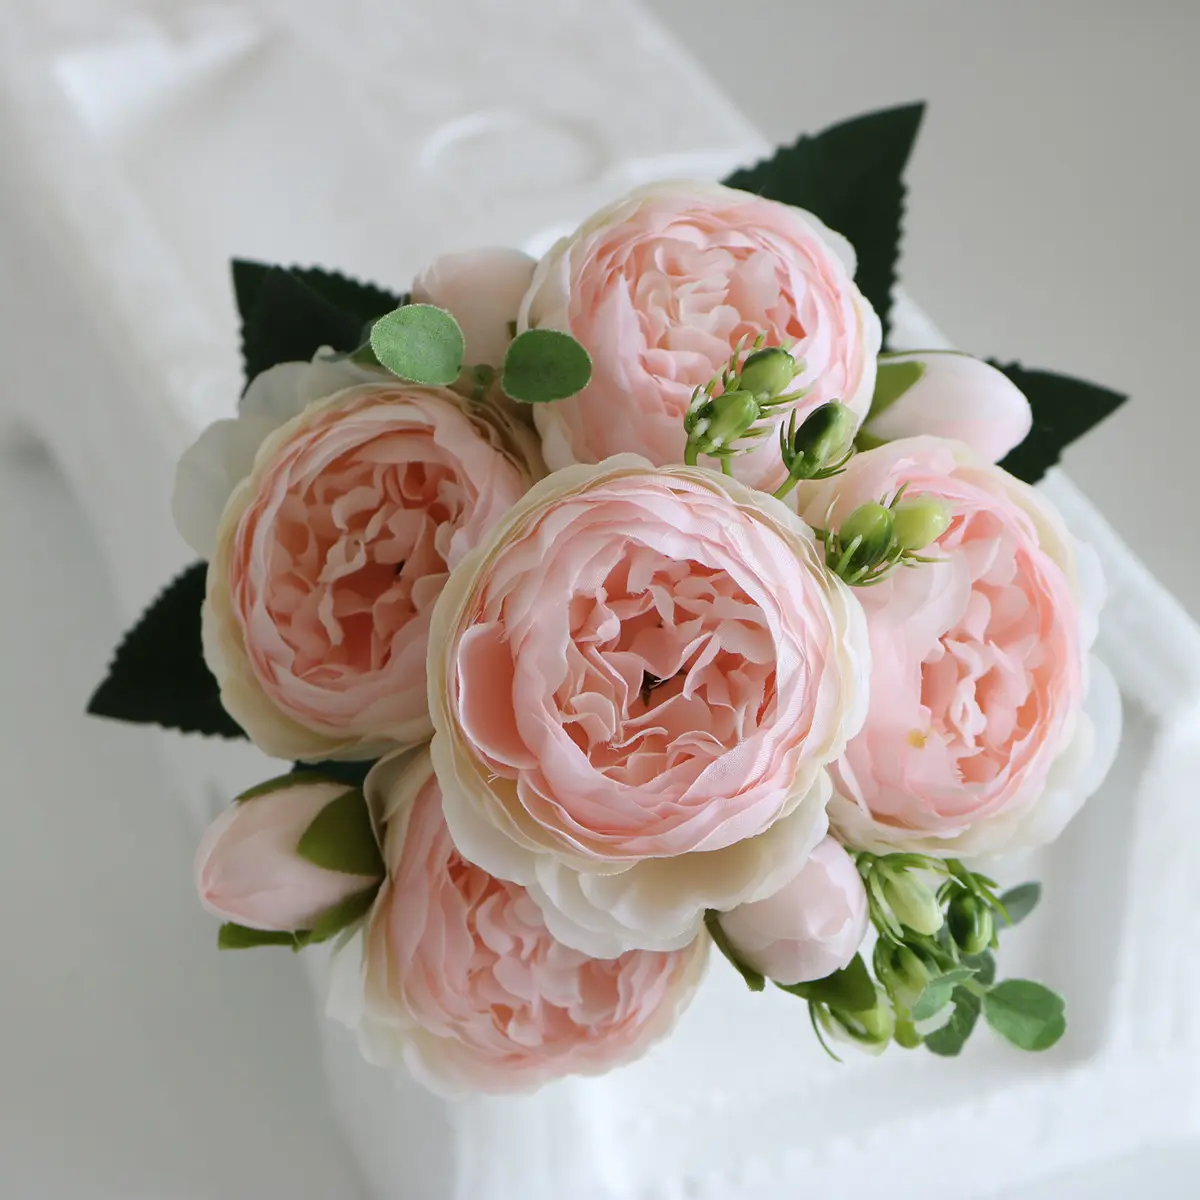 ดอกโบตั๋นผ้าไหมช่อดอกไม้ประดิษฐ์ดอกไม้ประดิษฐ์ดอกกุหลาบนิรันดร์สำหรับตกแต่งในร่มงานแต่งงาน